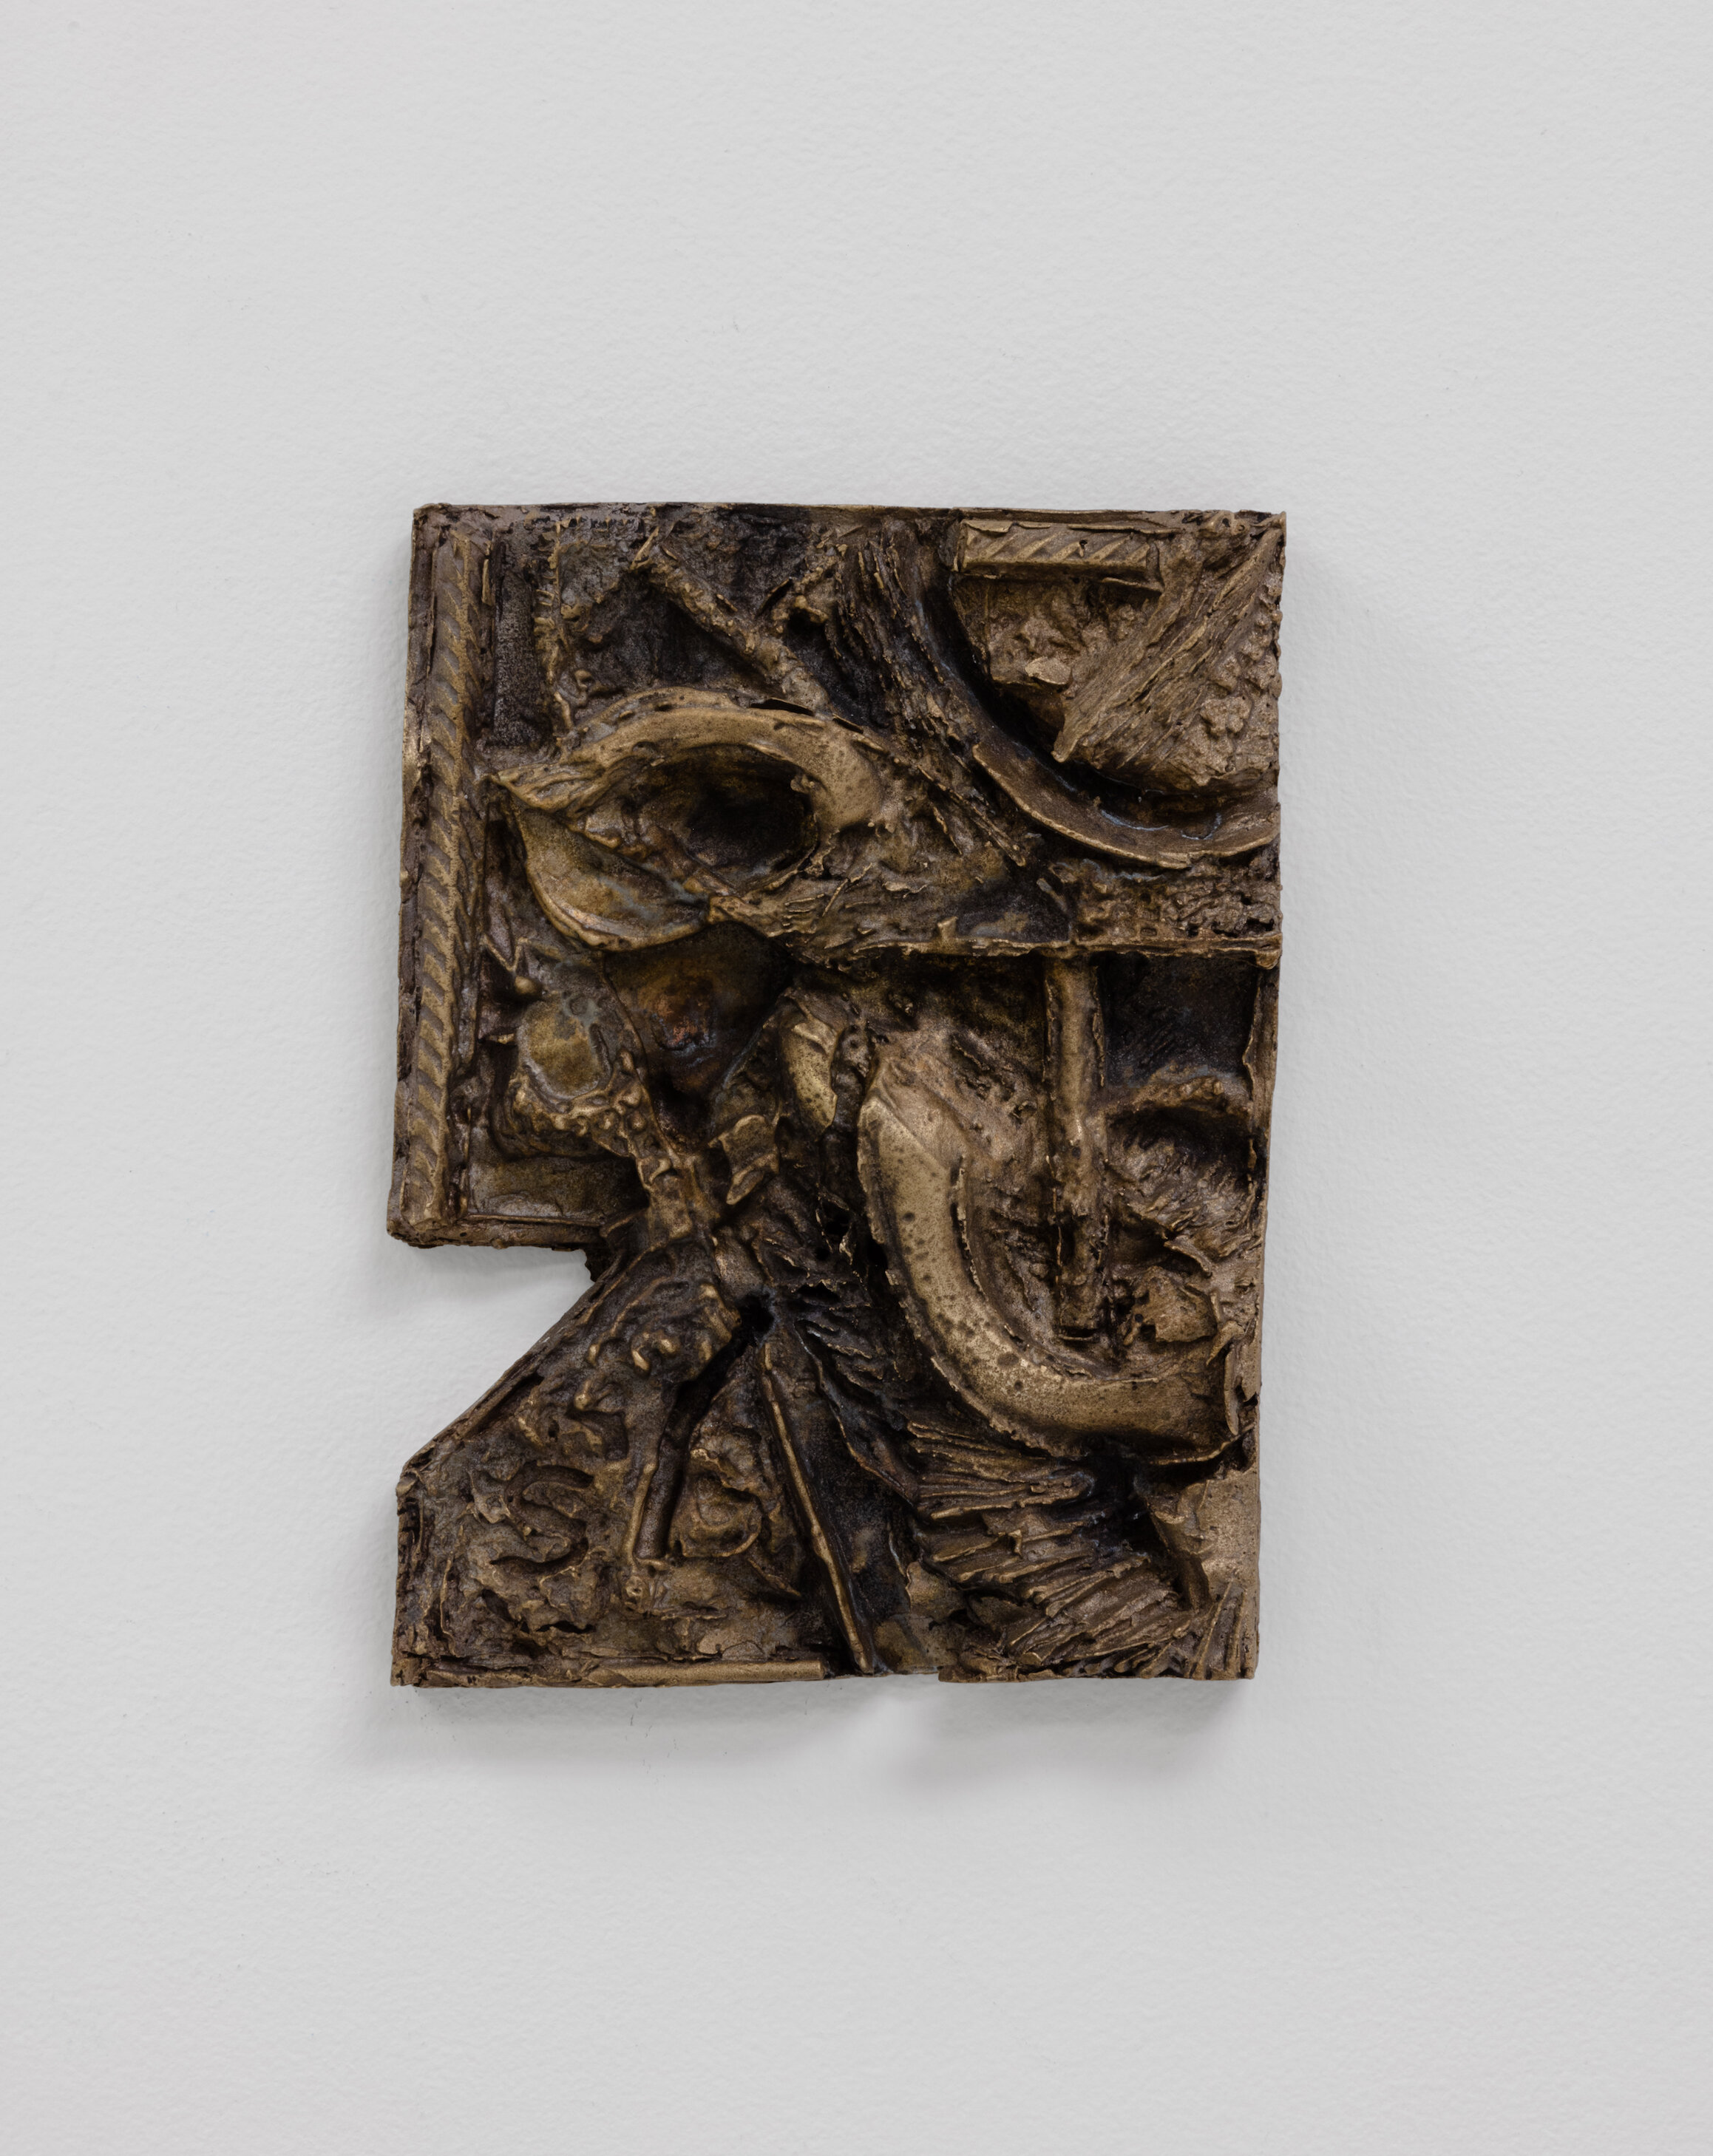  Martin Chramosta, Die Räuber 1, 2019, bronze, 31 x 24 cm 